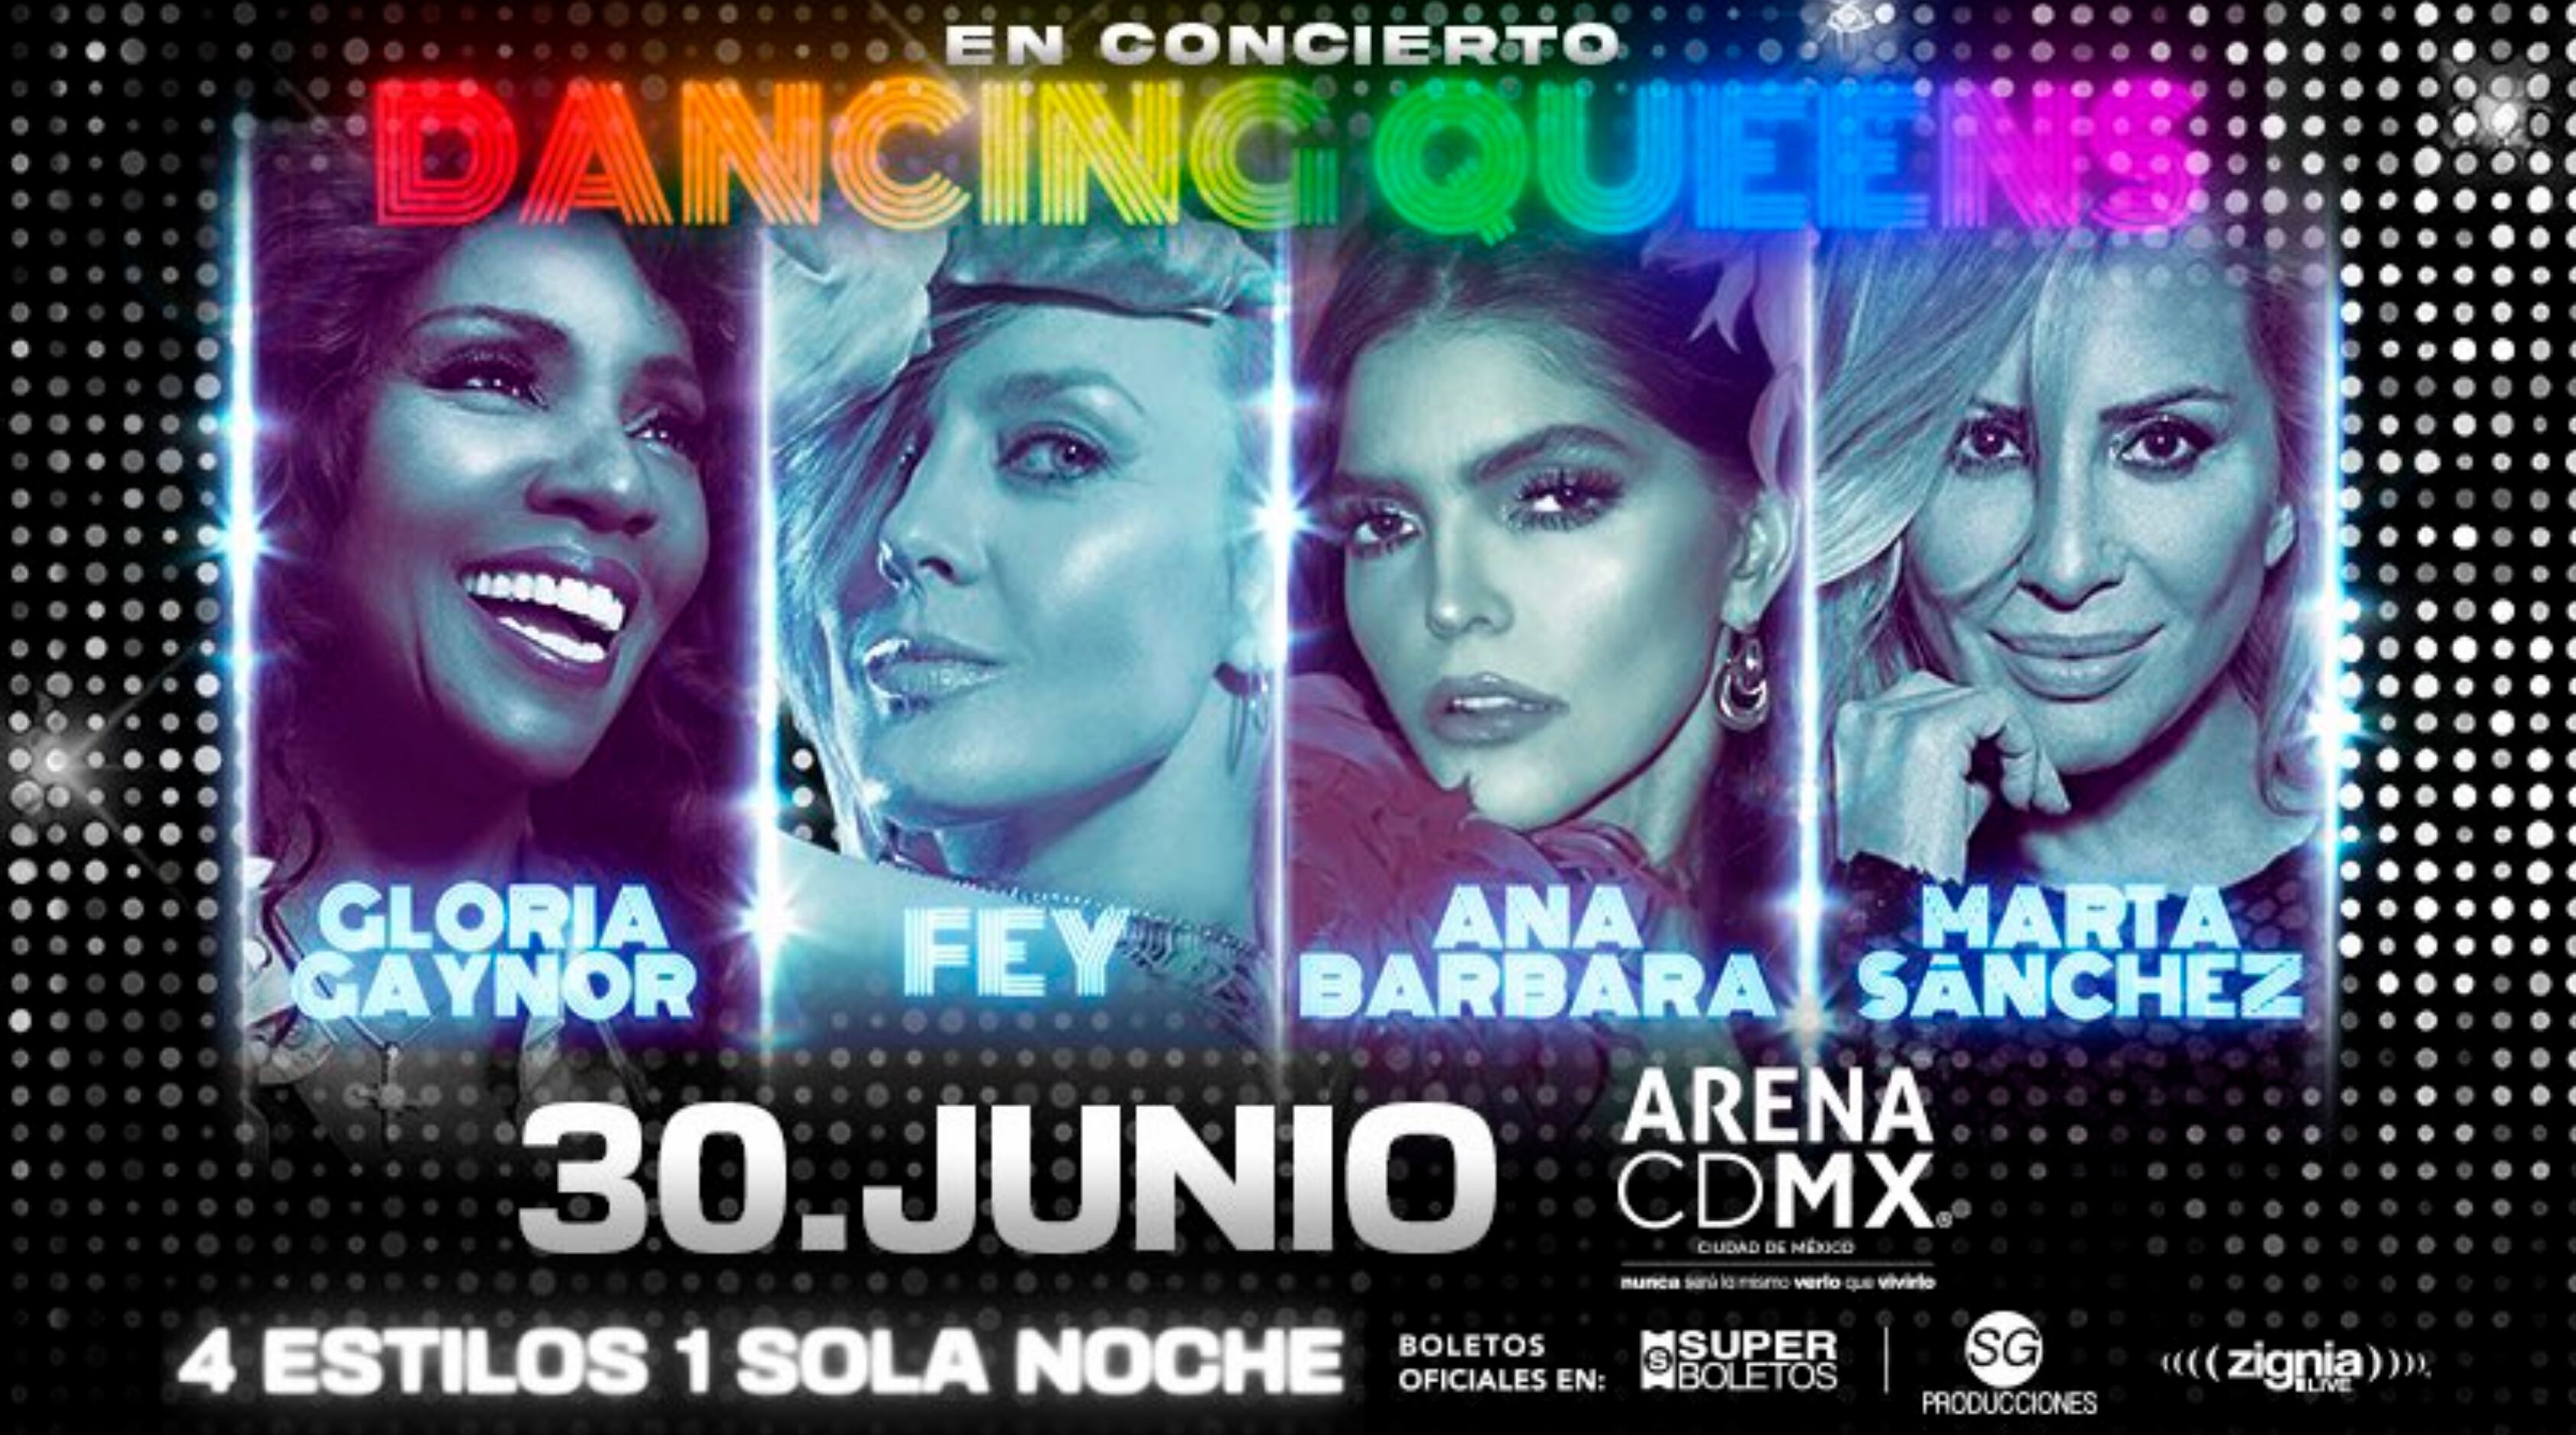 Ana Bárbara y Gloria Gaynor en concierto con Dancing Queens en la Arena CDMX